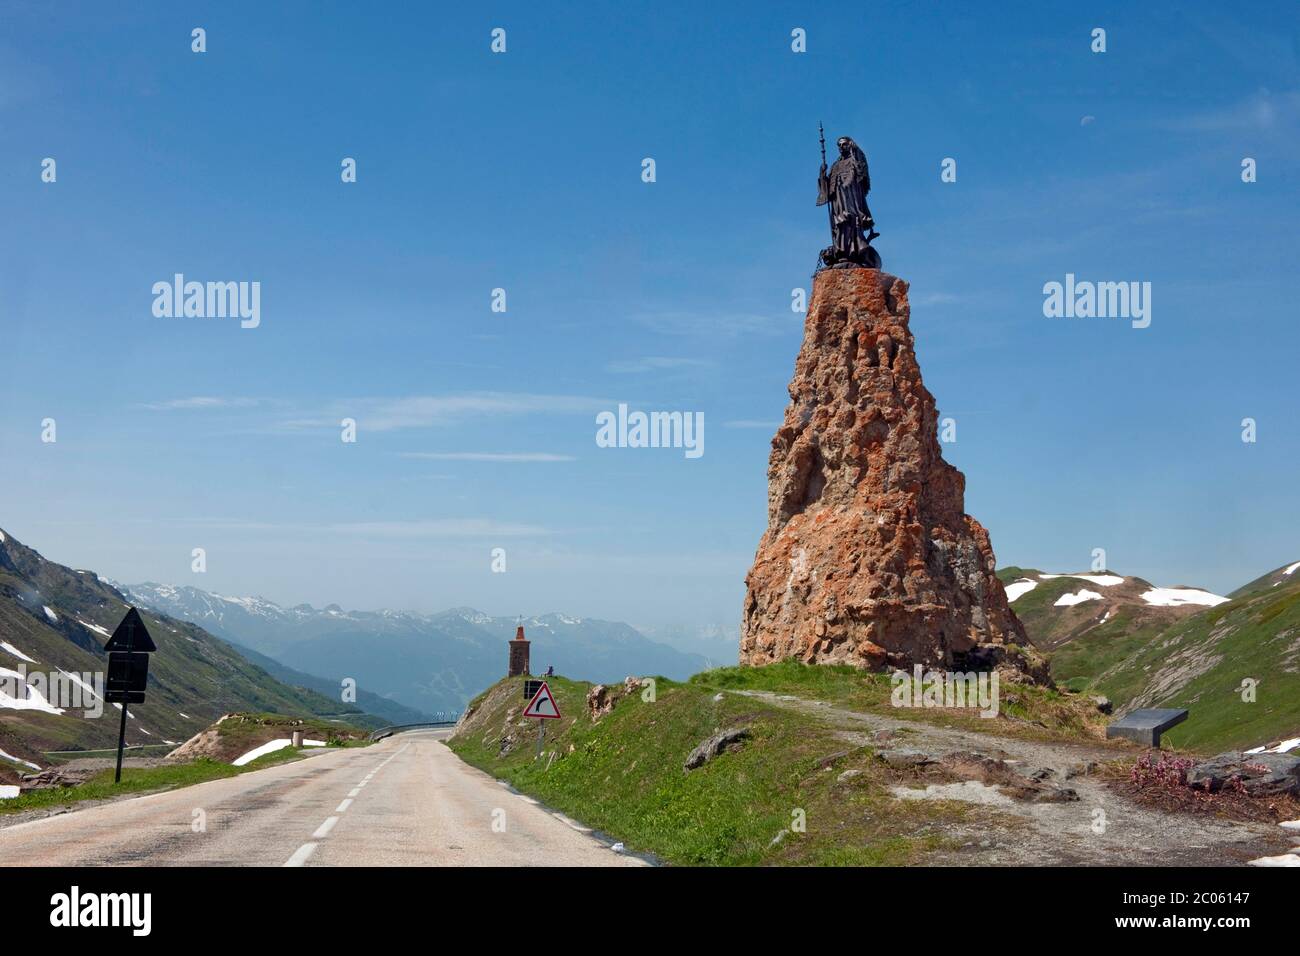 Monument avec statue, Saint Bernard de Menthon, hauteur de passage petit col Saint Bernard, la Thuile, Valle d'Aoste, Italie Banque D'Images